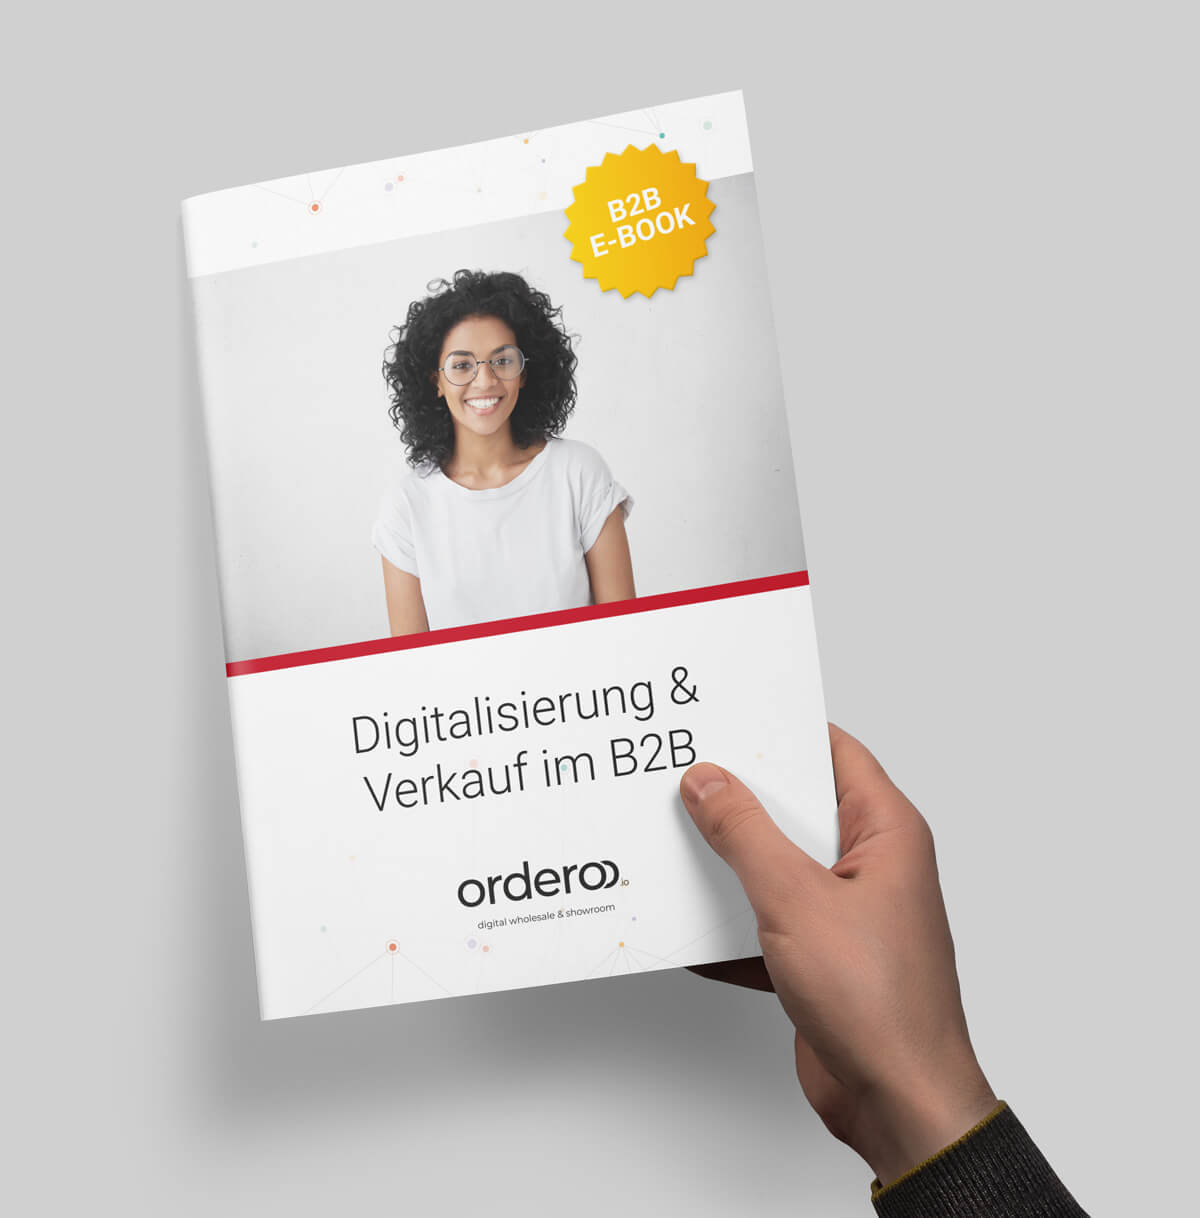 Digitalisierung und Verkauf im B2B - Jetzt E-Book sichern